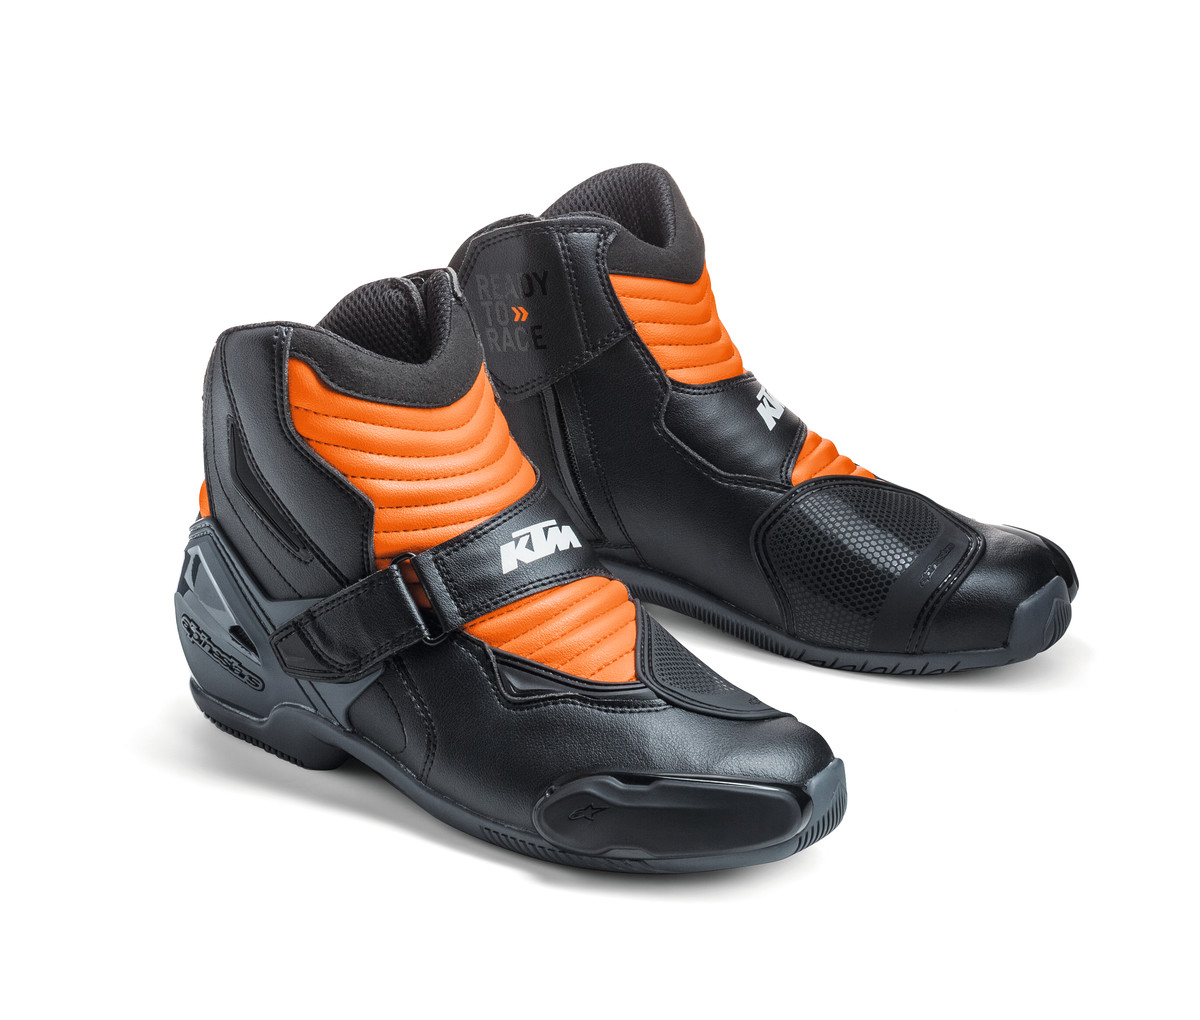 S-MX 1 R Shoes Shoe size 40